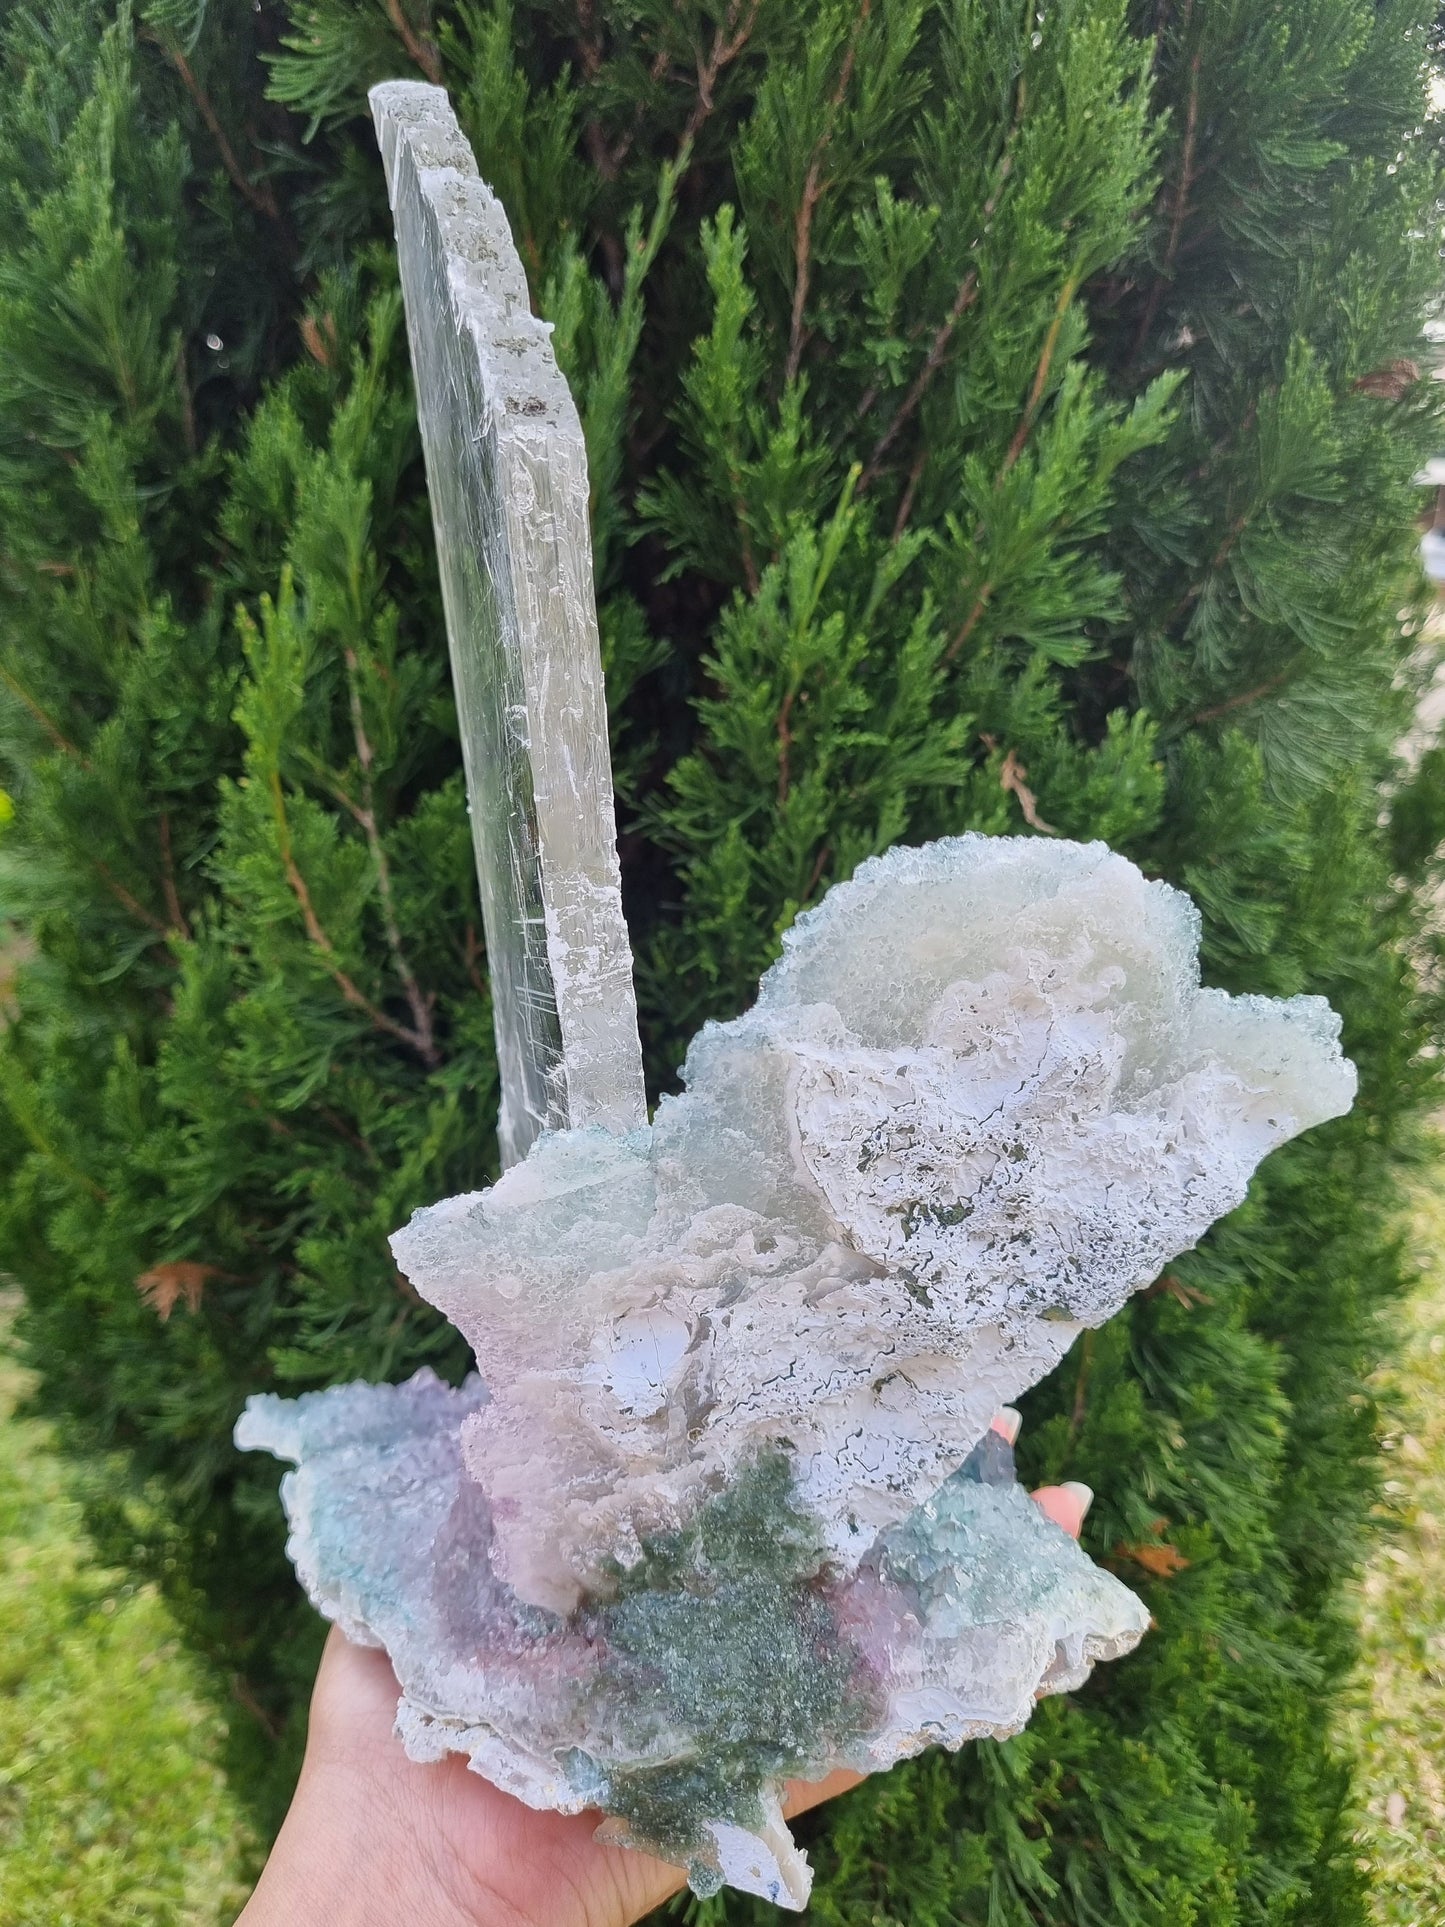 Flower Amethyst with Gypsum / Amethyst Zeolite / Statement Piece / The Unicorn - Universal Fate